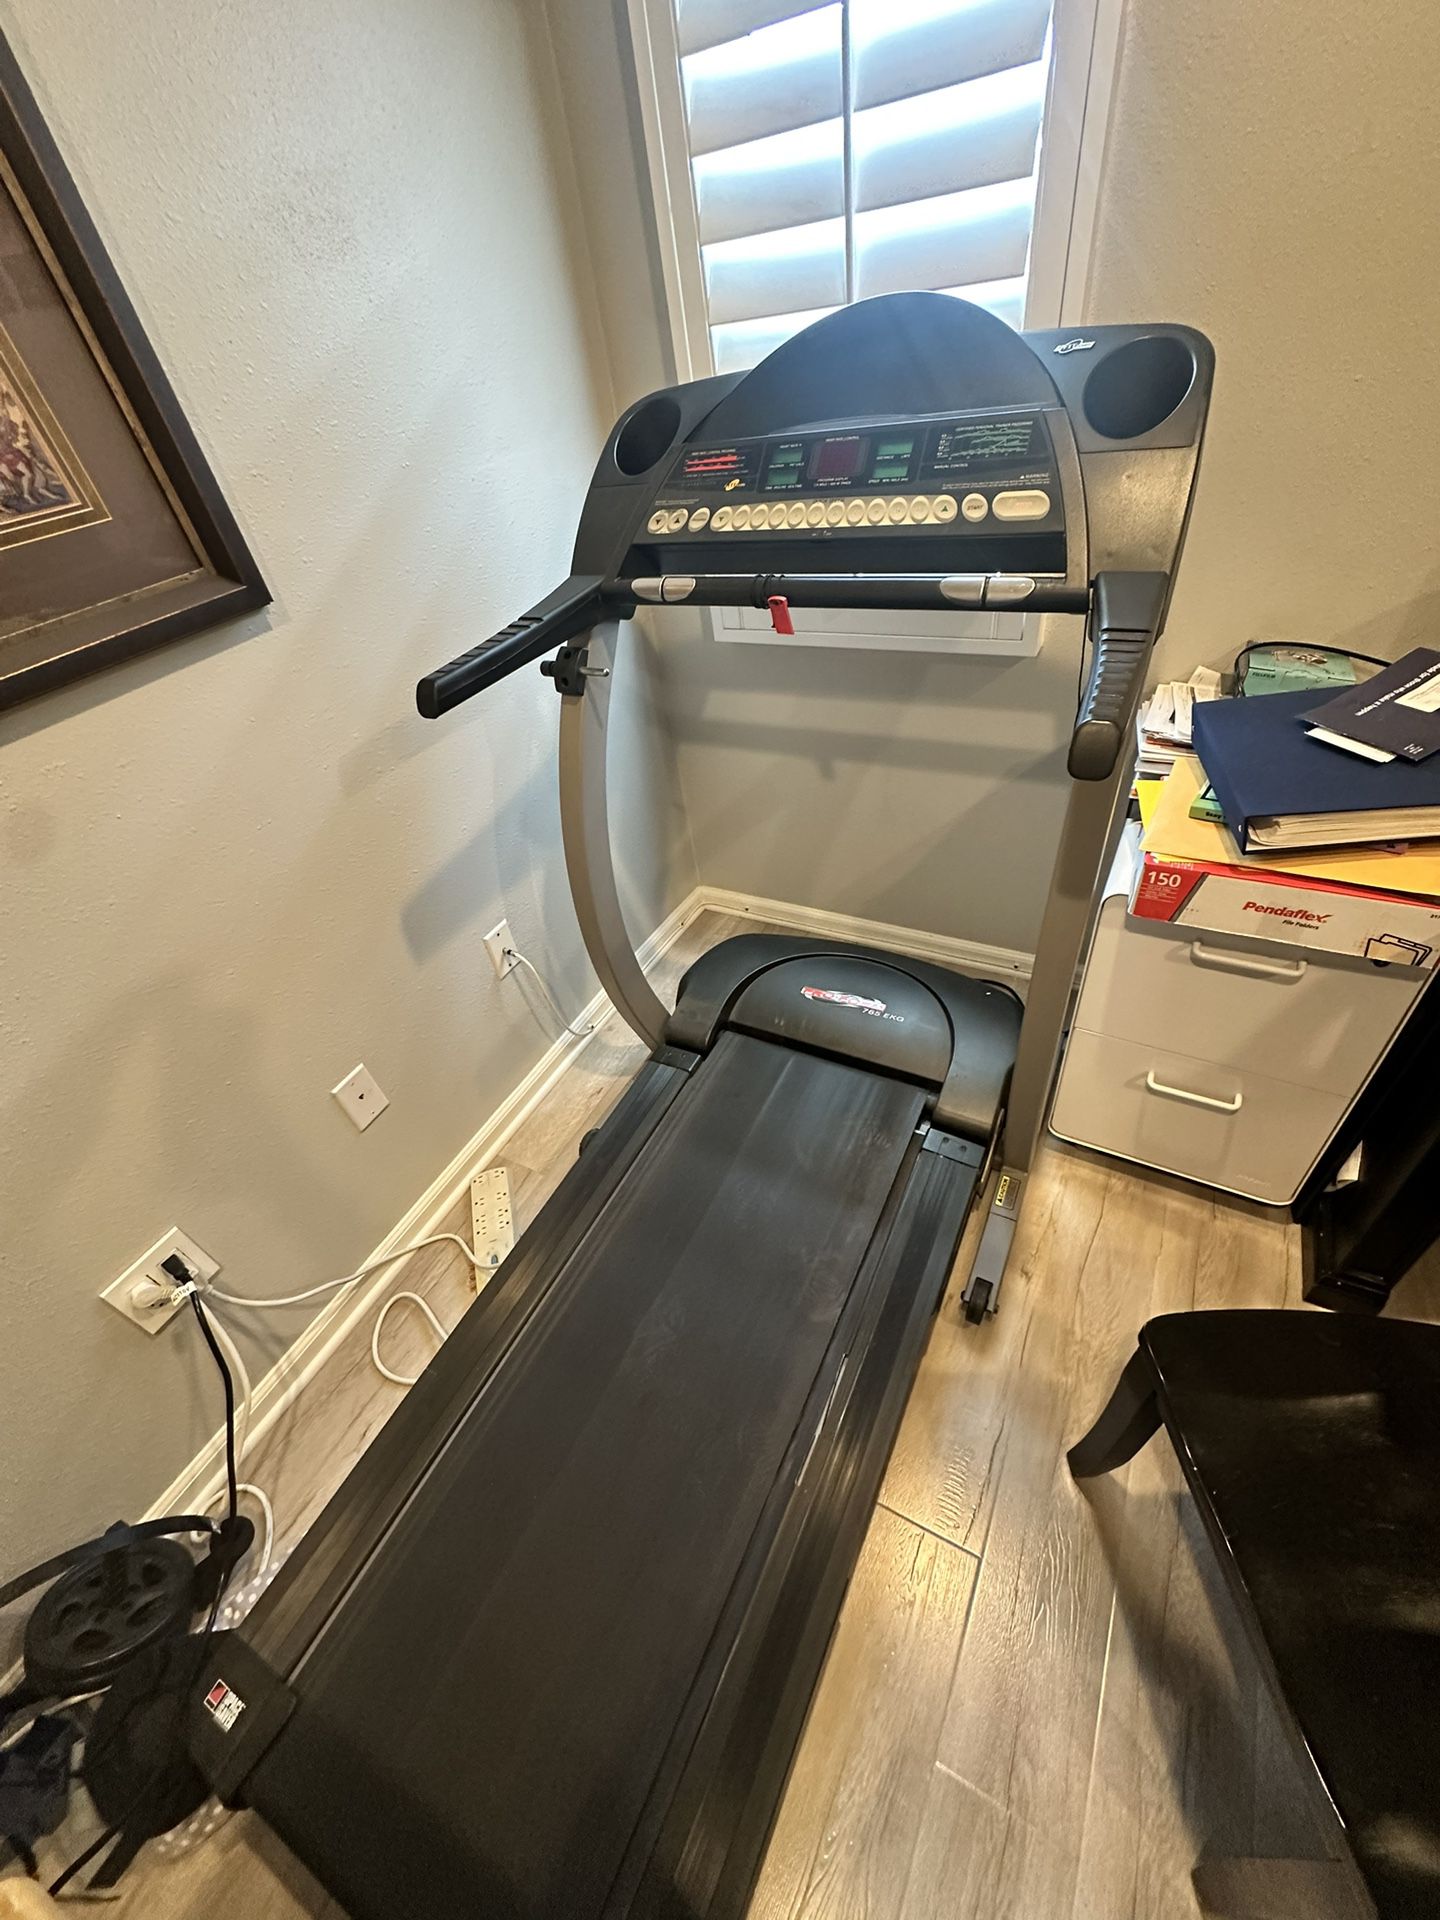 Pro Form Treadmill 